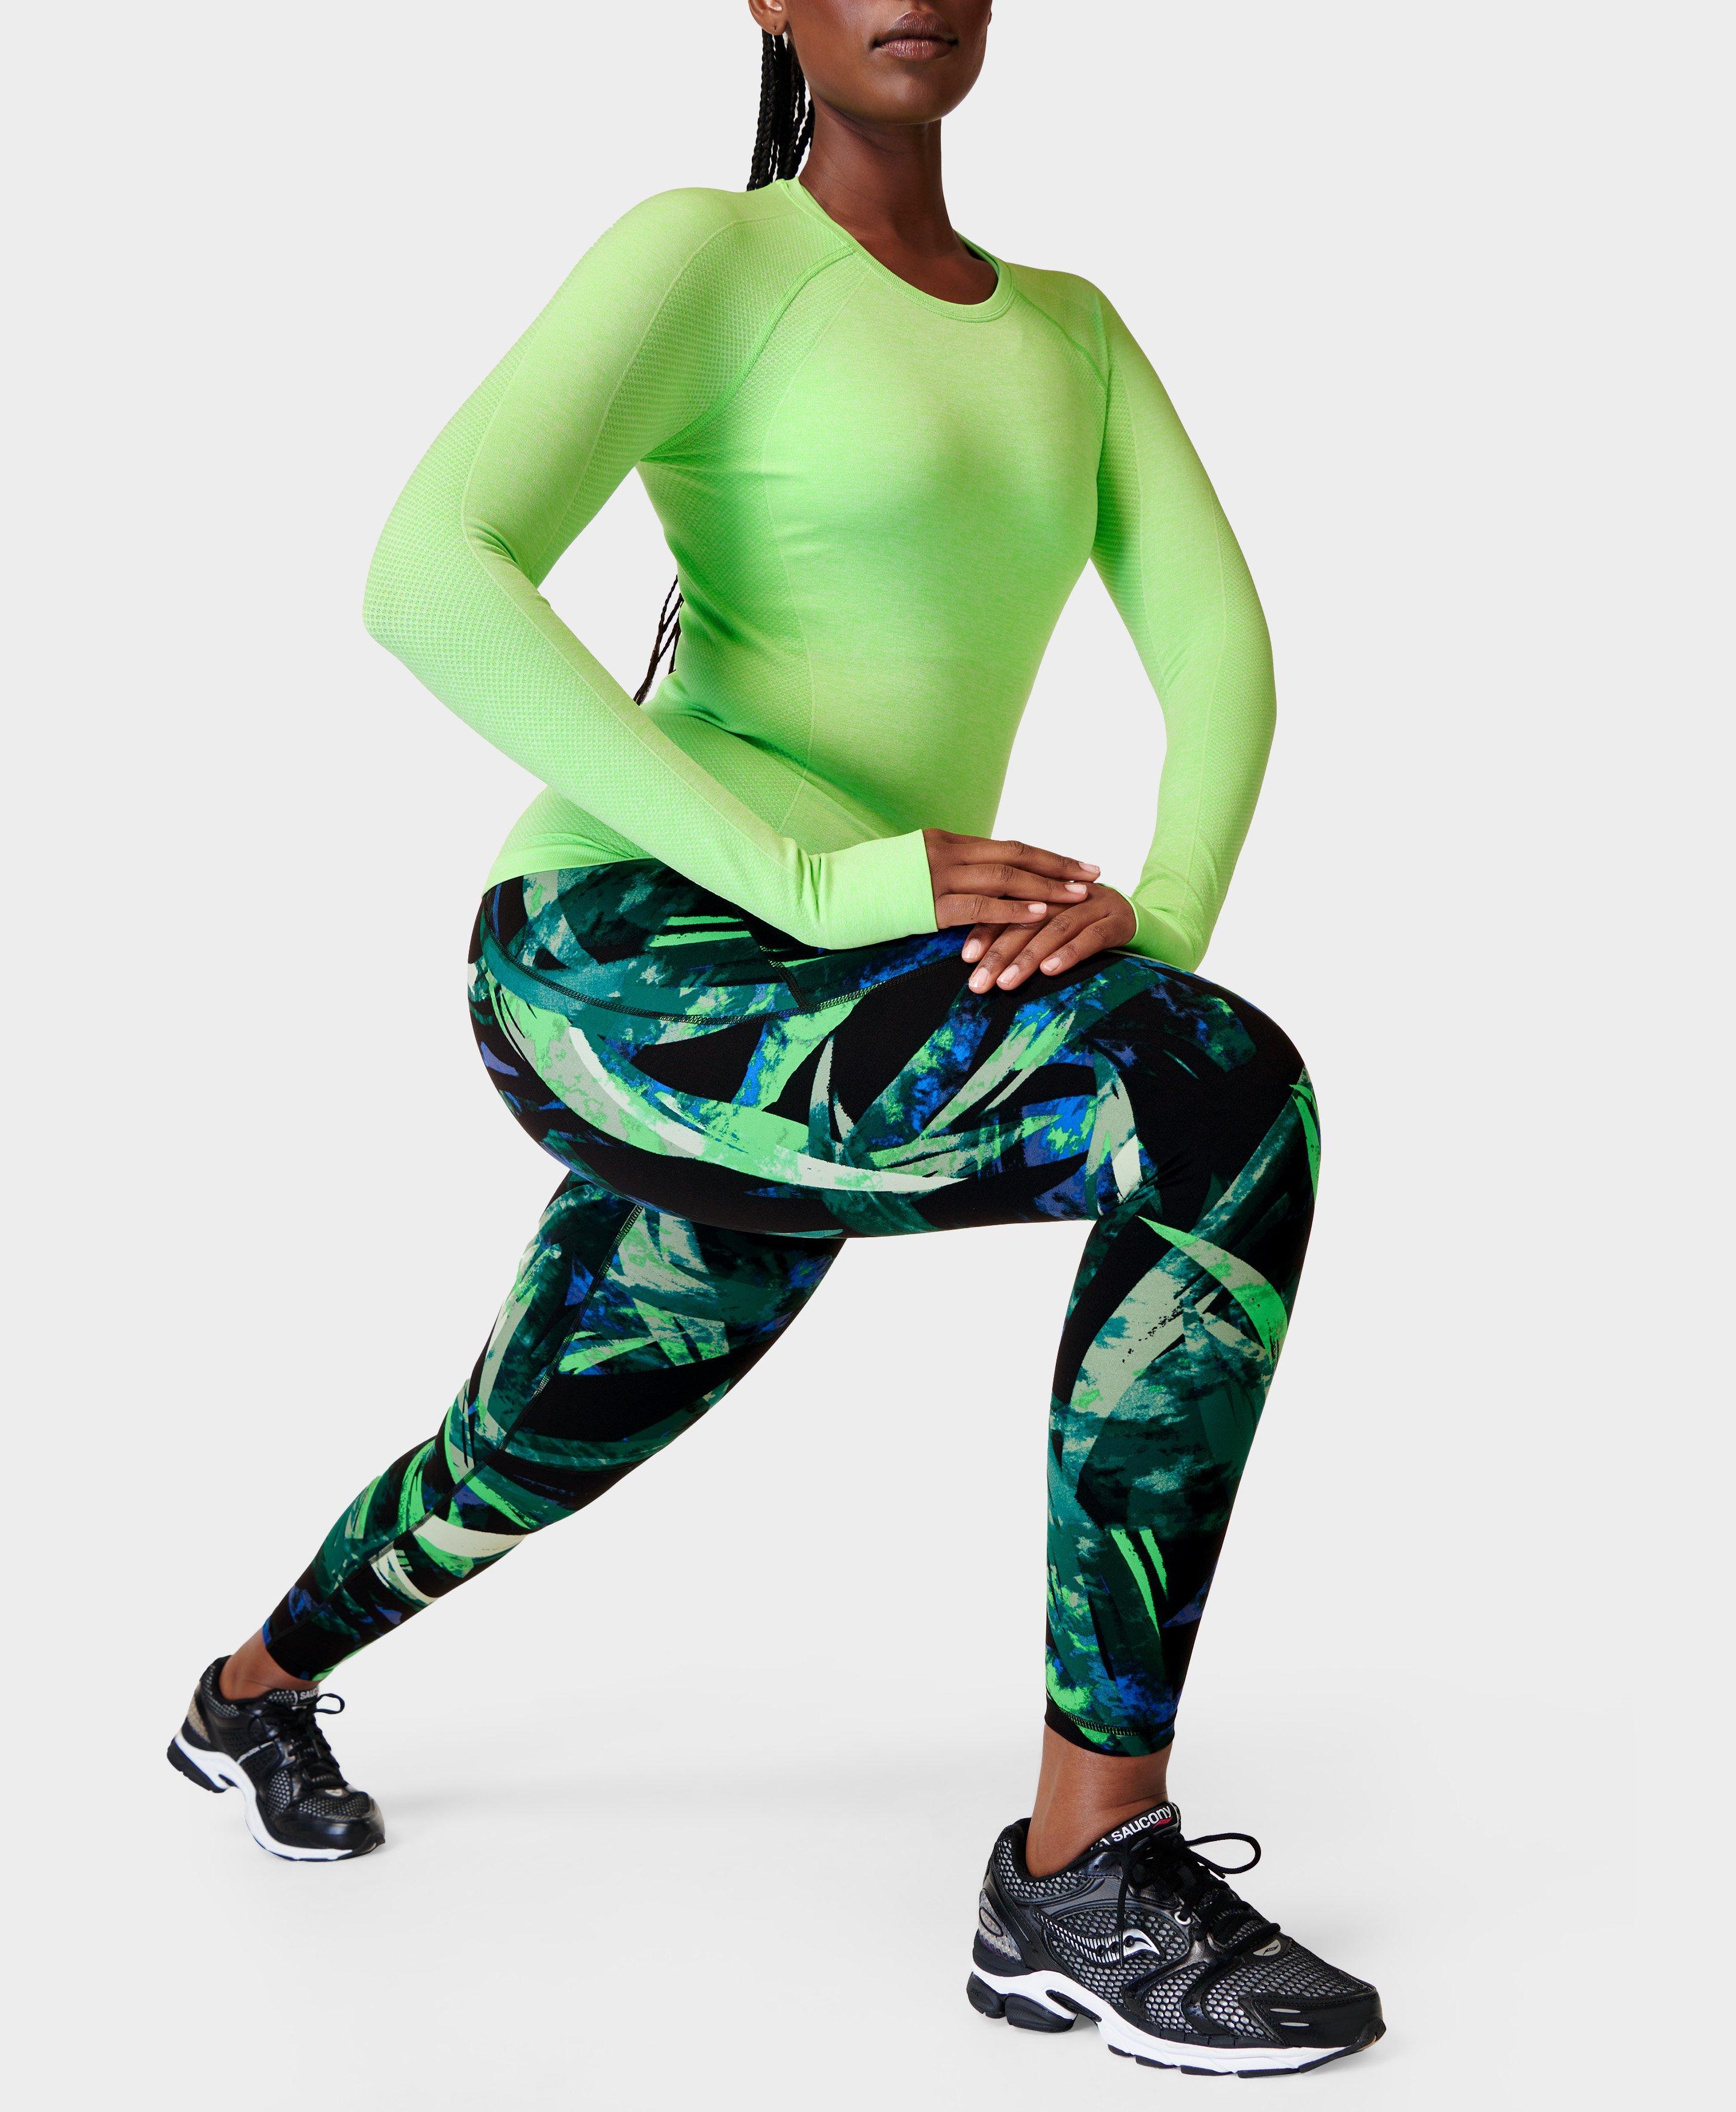 Power 7/8 Gym Leggings - Green Areca Palm Print, Women's Leggings